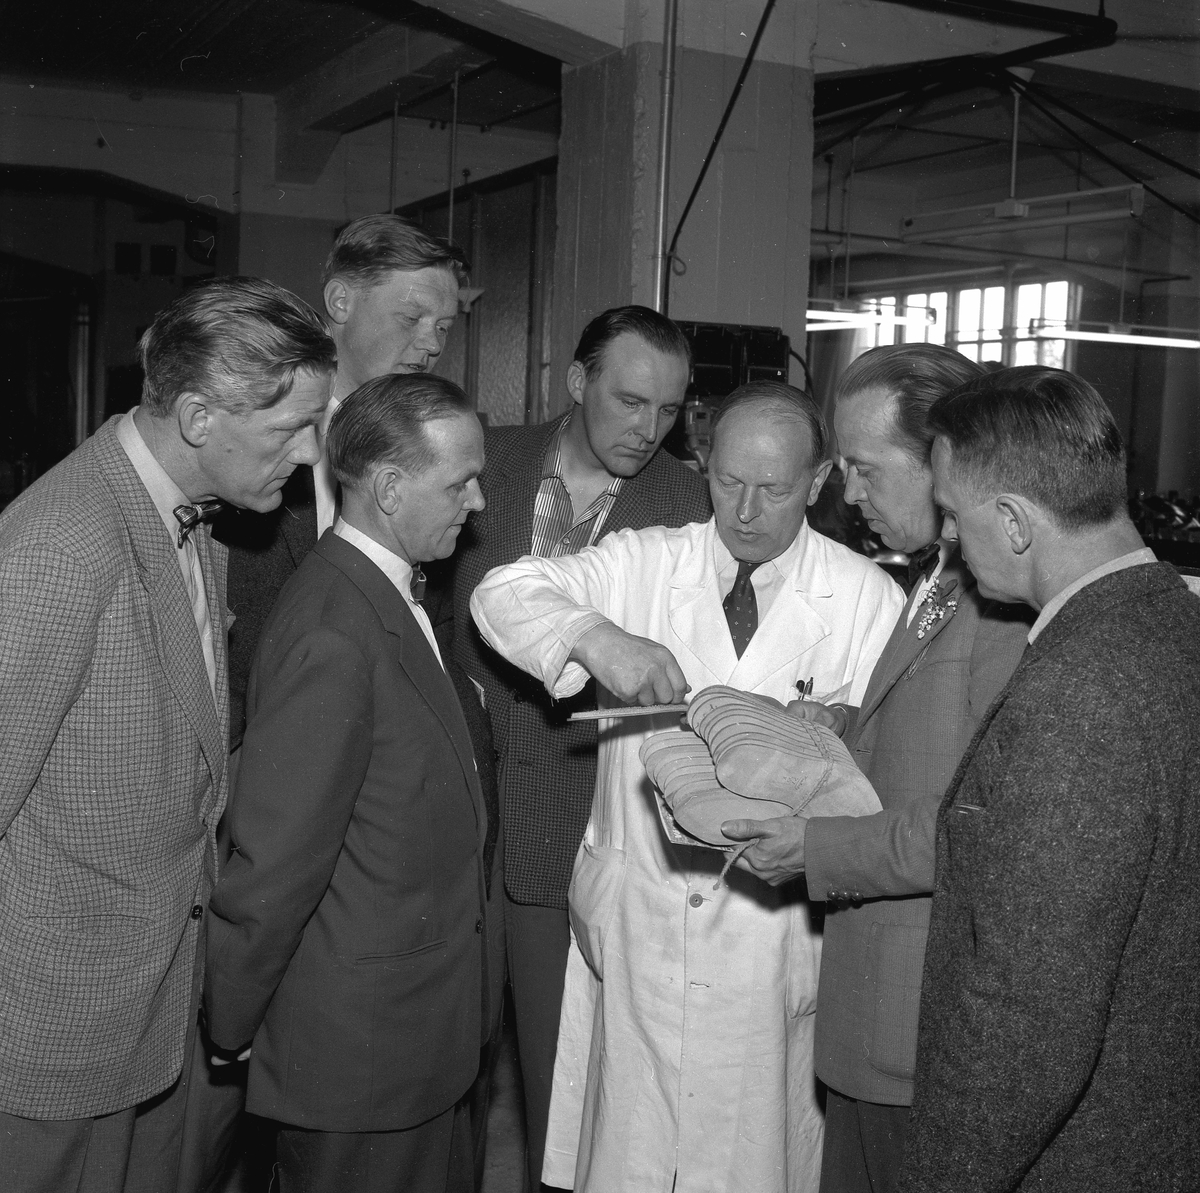 ABF-instruktörer på Skoindustri.
12 juni 1958.